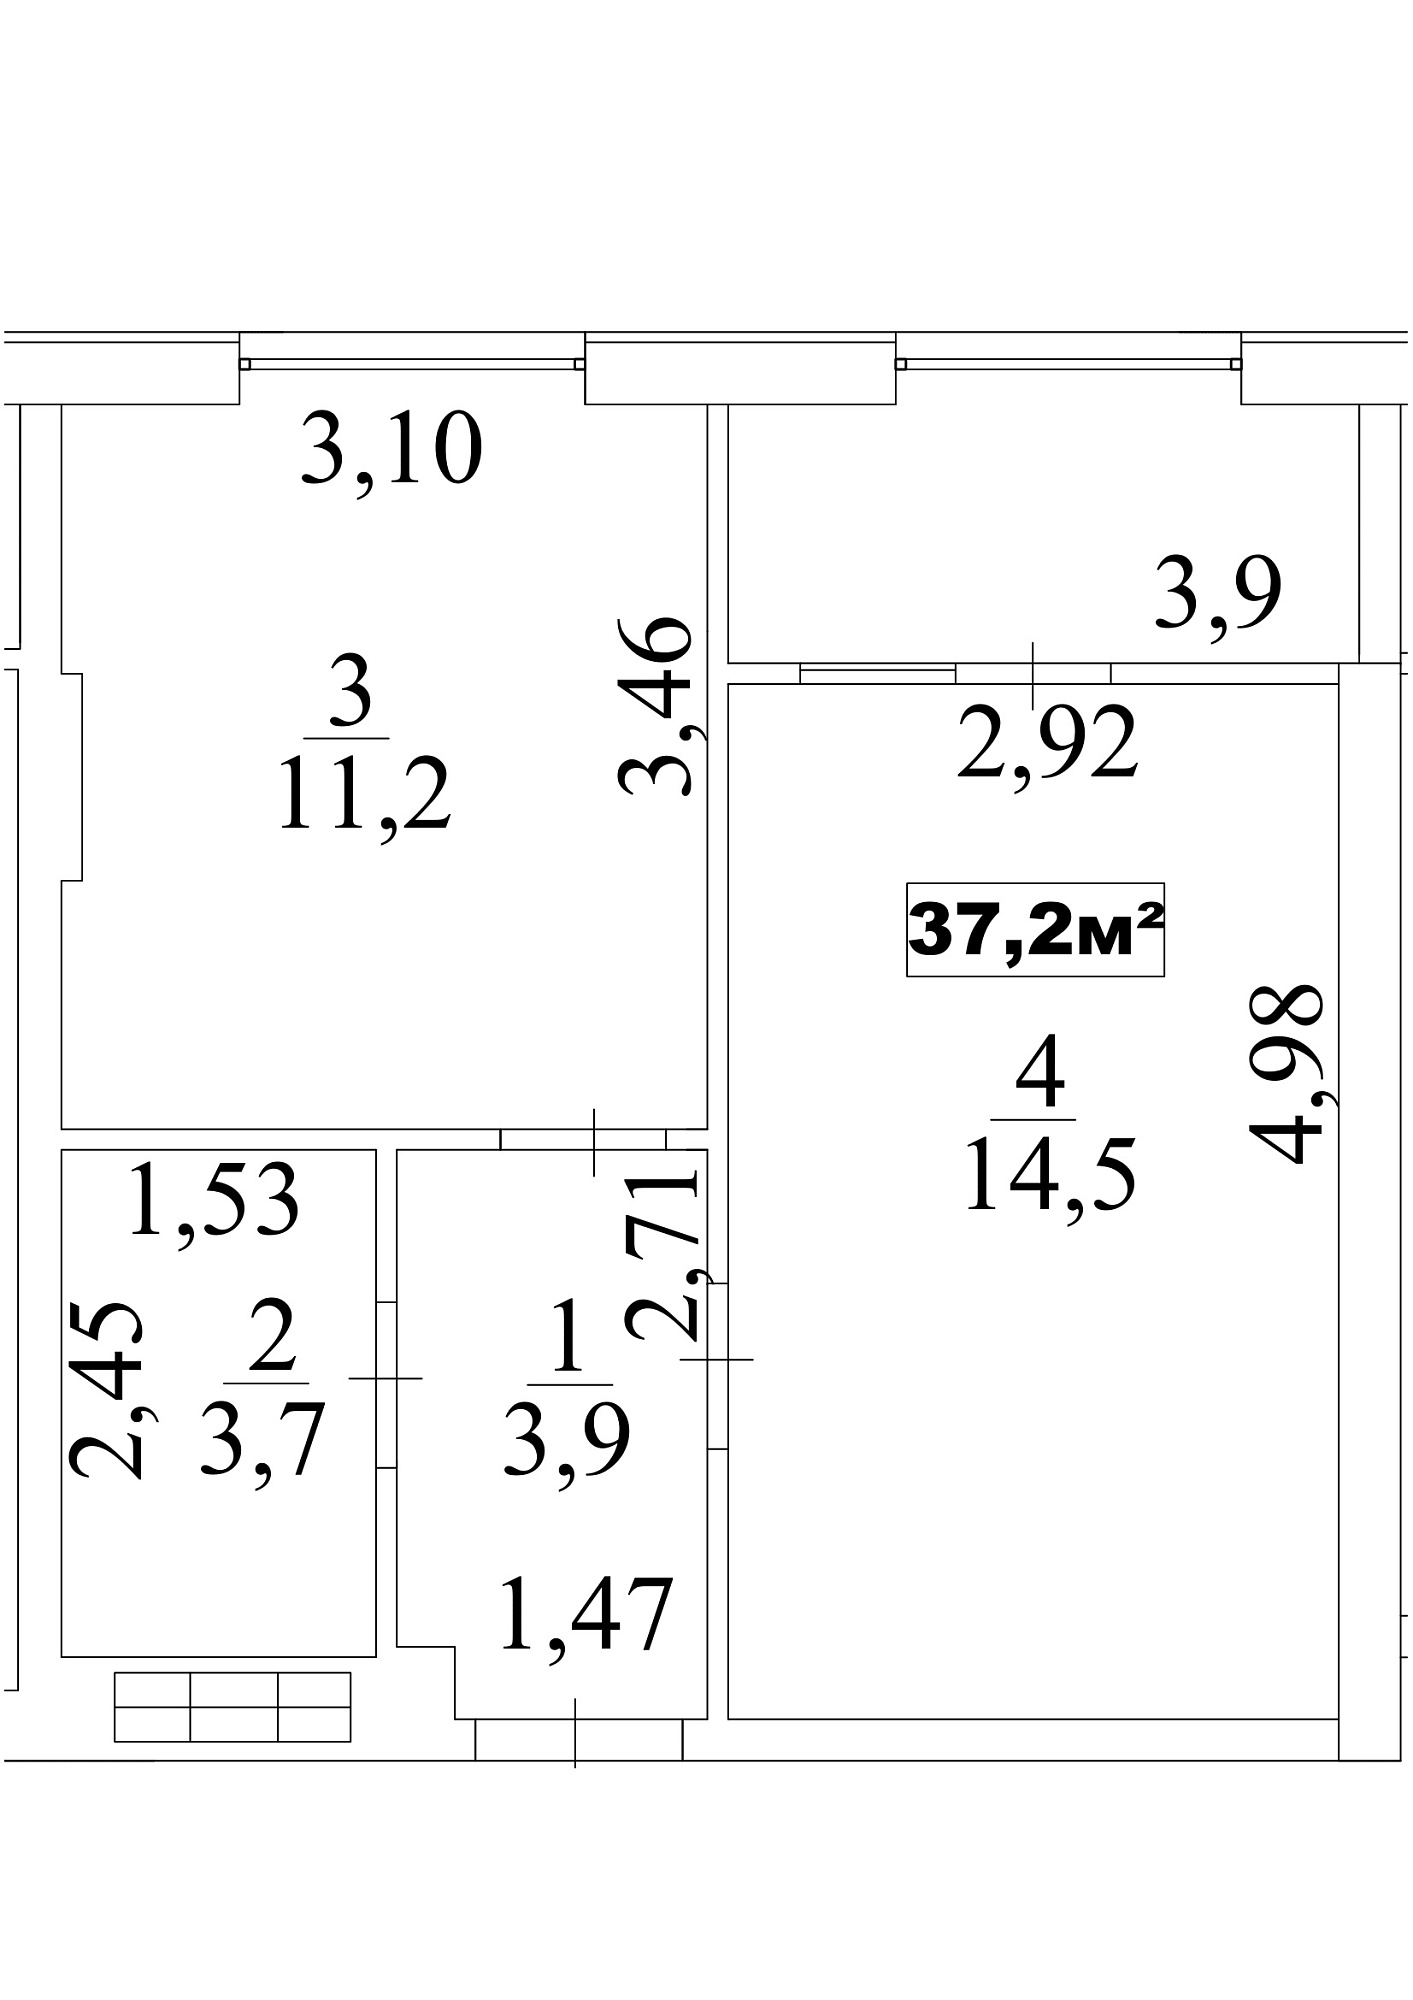 Планировка 1-к квартира площей 37.2м2, AB-10-01/0007а.